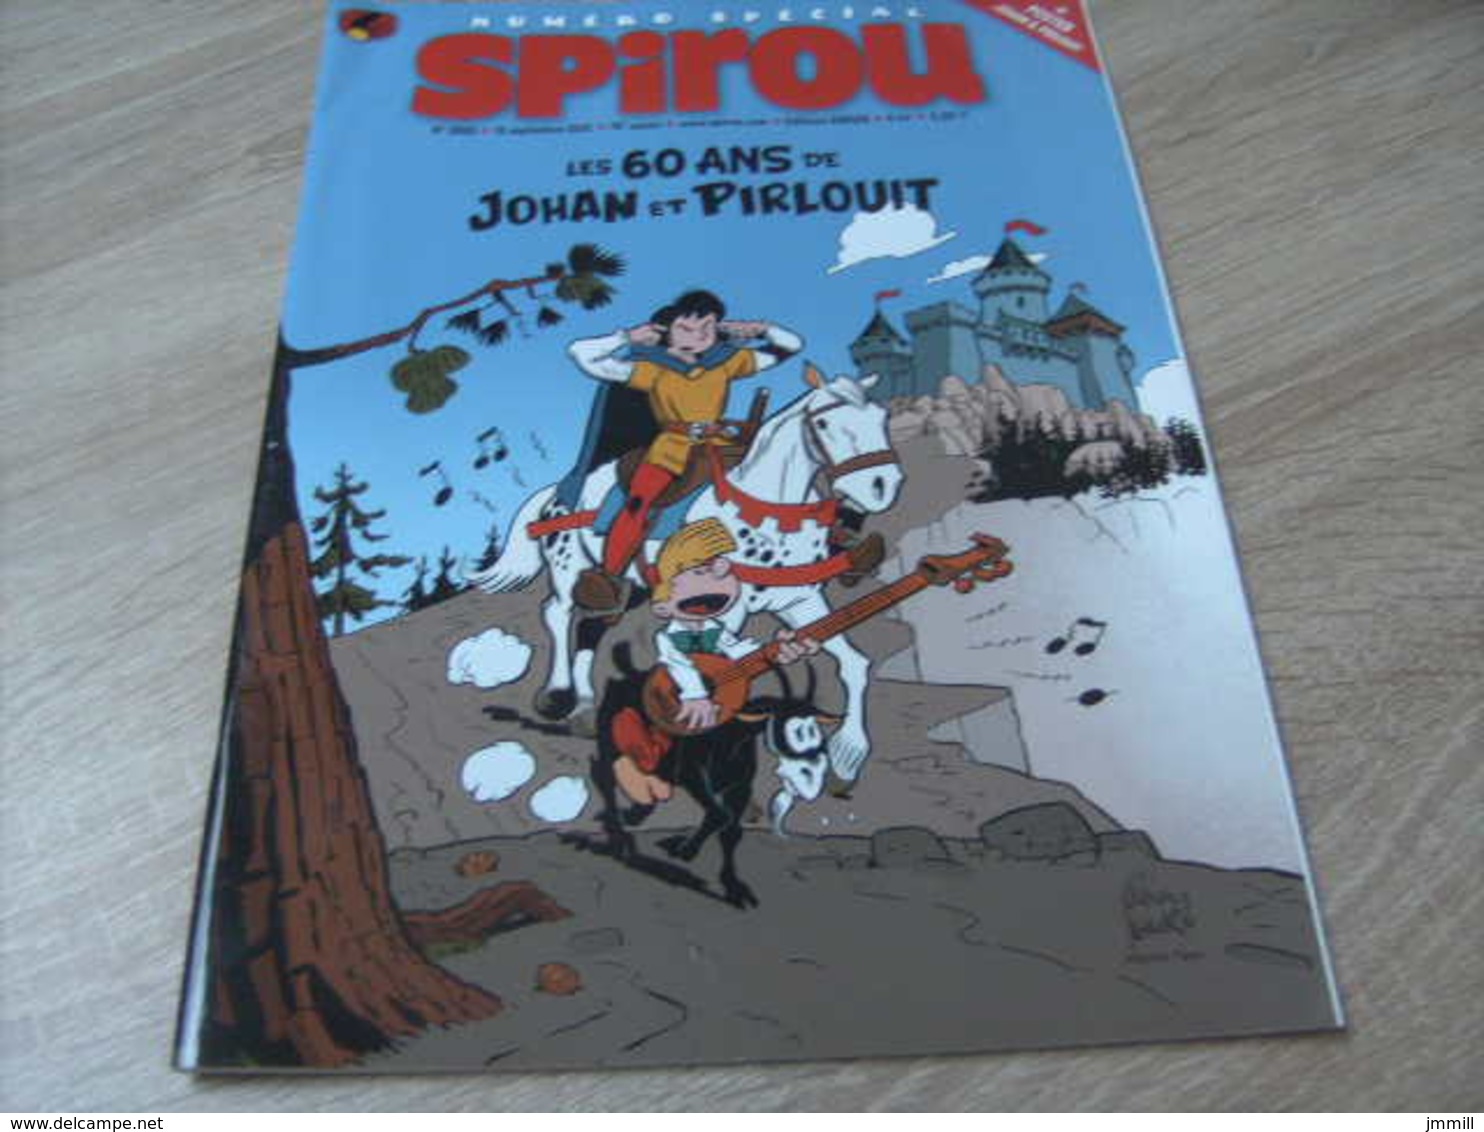 Mes Ref  SP 6 : Année 2012 : Spirou 3883 Spécial Peyo Johan Pirlouit + Supplement Poster - Spirou Magazine